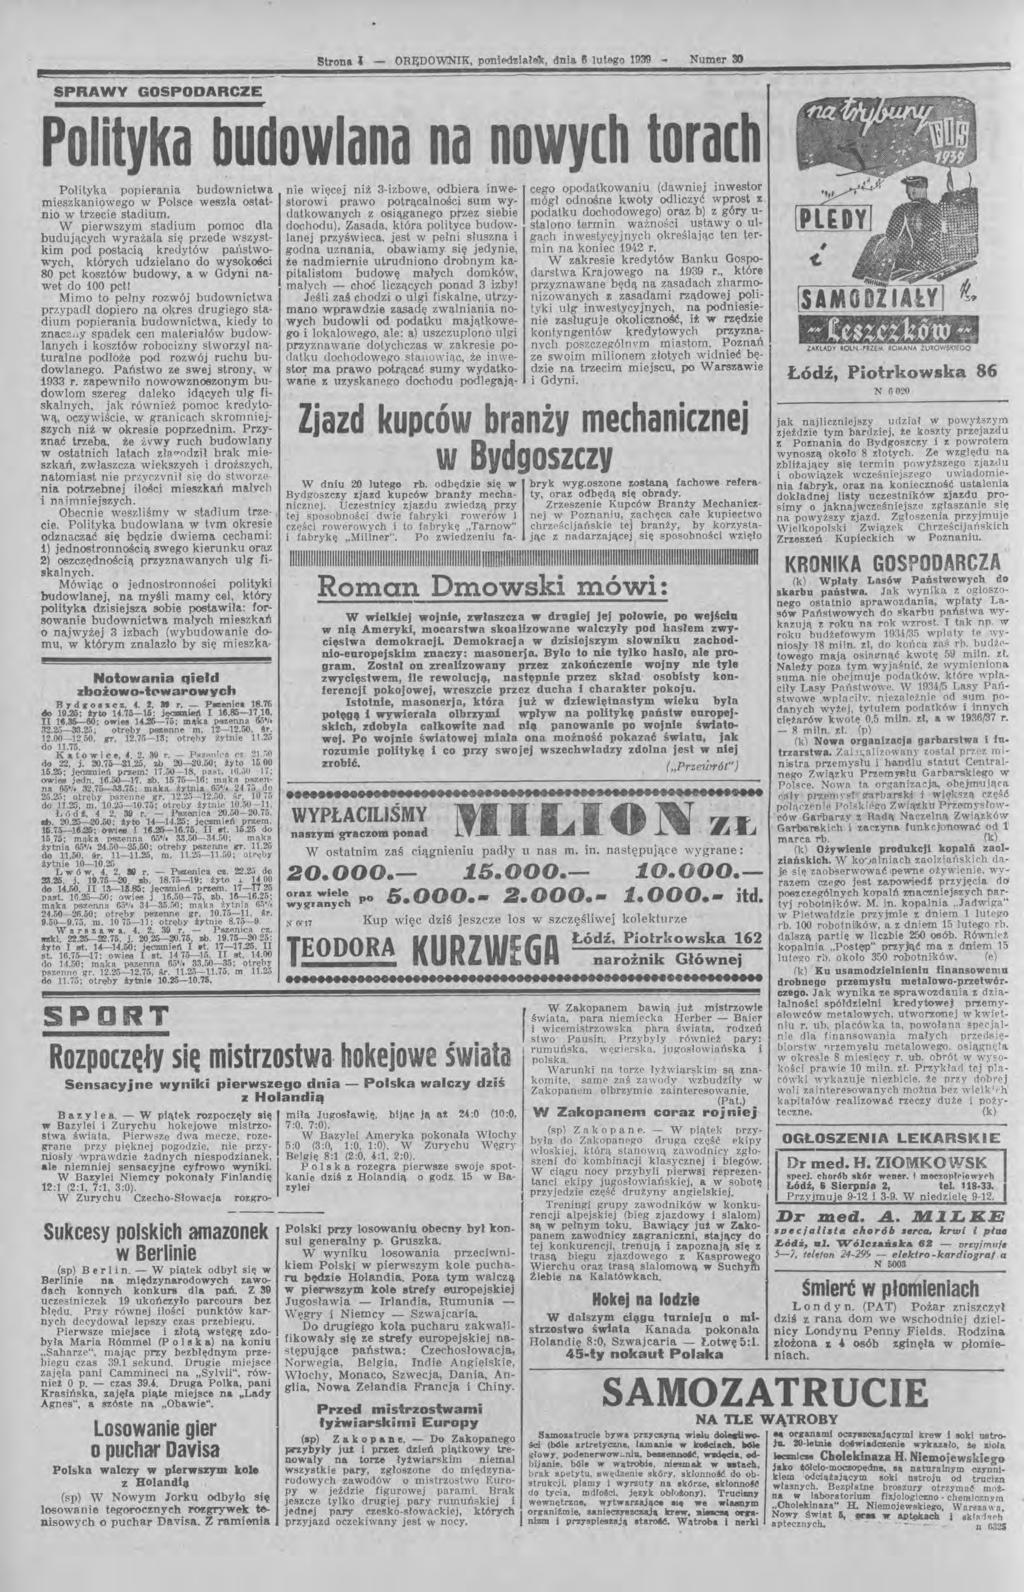 L Strona - ORĘDOWNK, ponioo'liale'k, dnia 6 lutego 1939 - Numer tł) SPRAlMY GOSPODARCZE Polityka budowlana na nowych torach Polityka popierania budownictwa mieszkaniąwego w Polsce weszła ostatnio w